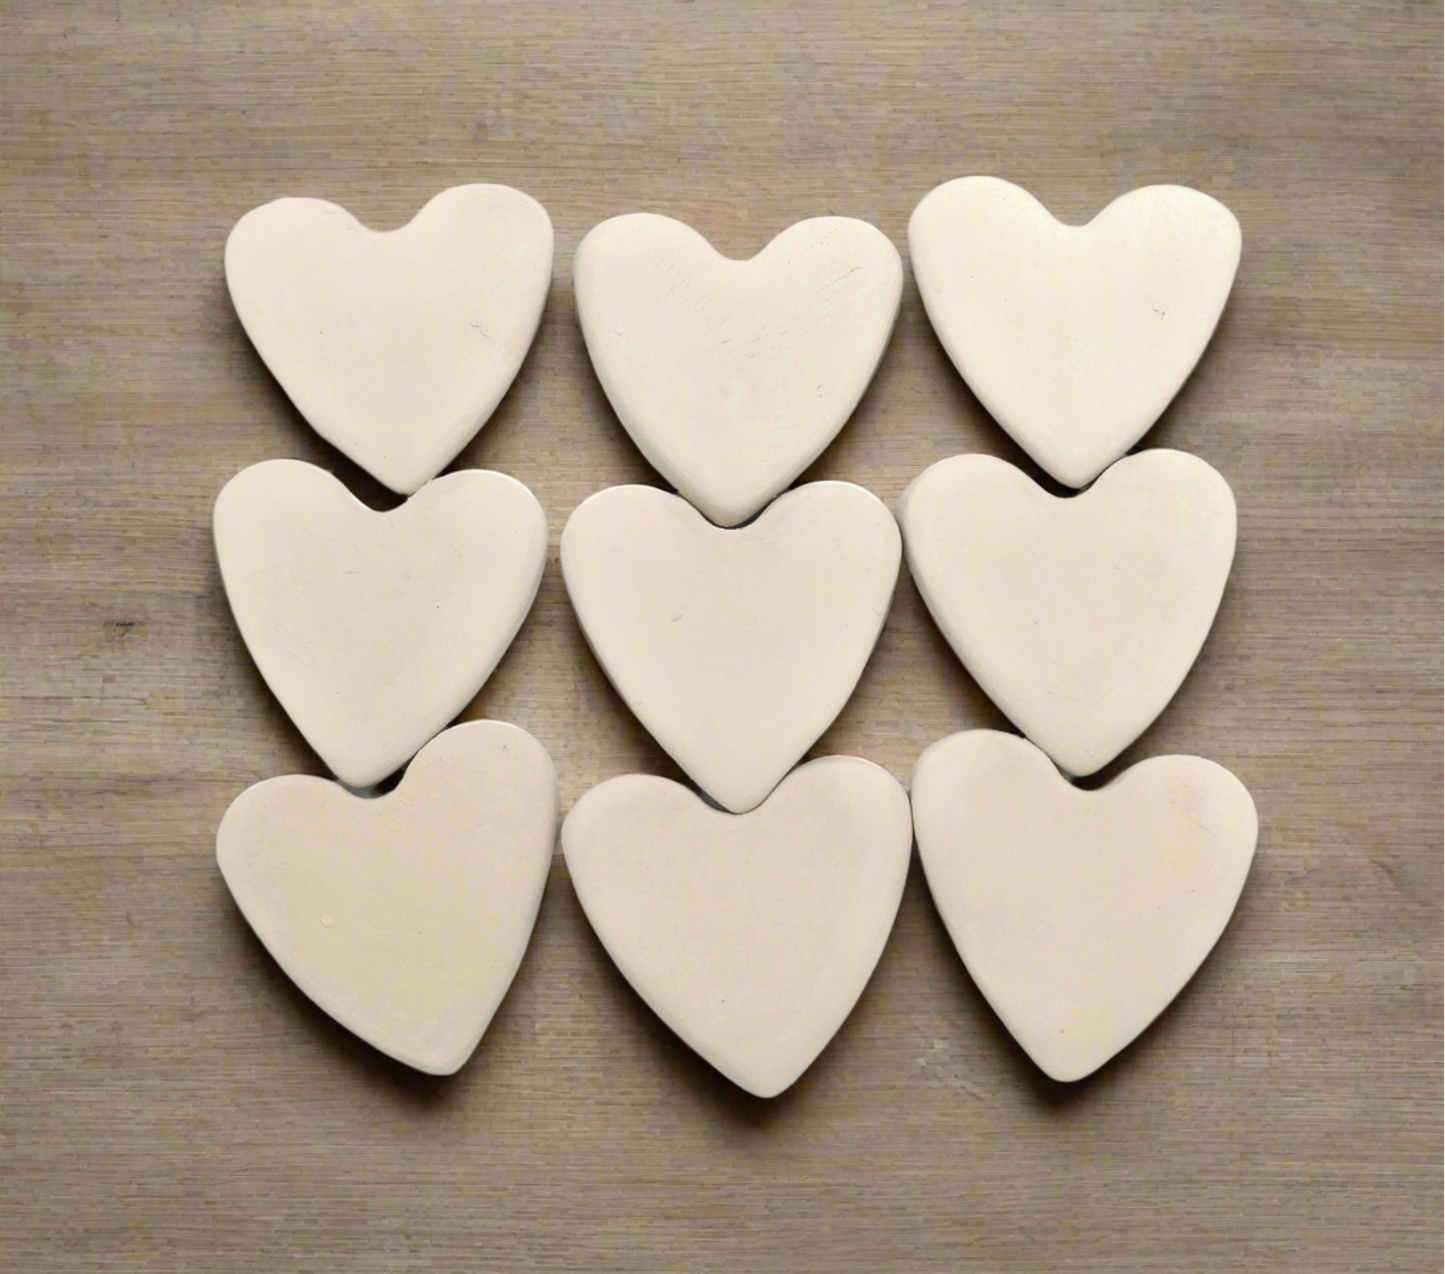 Conjunto de 9 azulejos de bisque de cerámica hechos a mano en forma de corazón, artículos más vendidos, azulejos de mosaico de favores de boda, corazón pequeño sin pintar listo para pintar